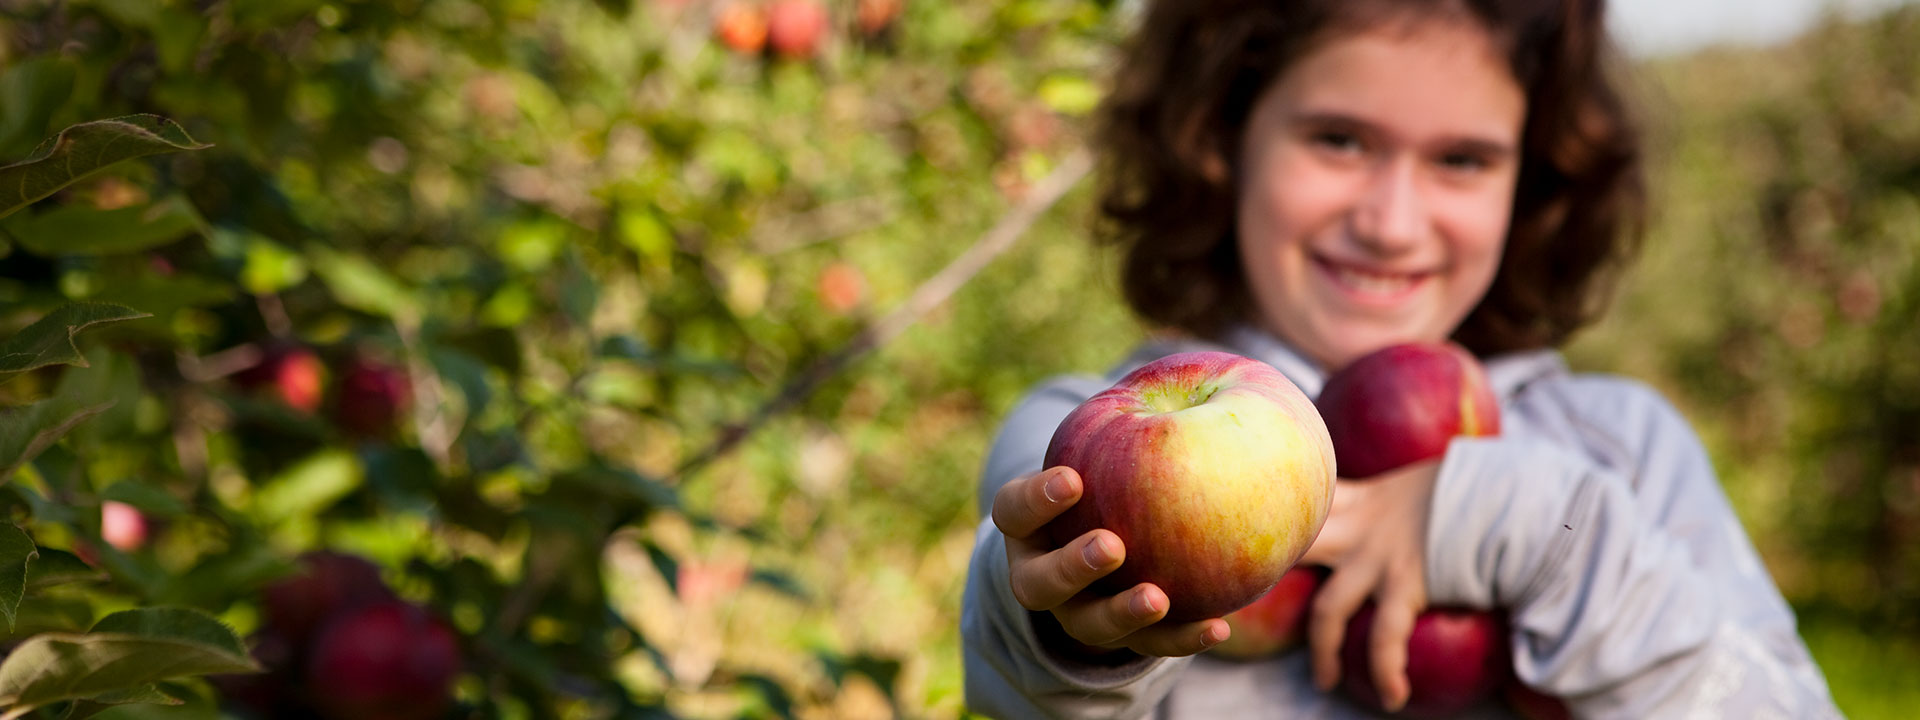 Come pick your apples in the orchard Au coeur de la pomme